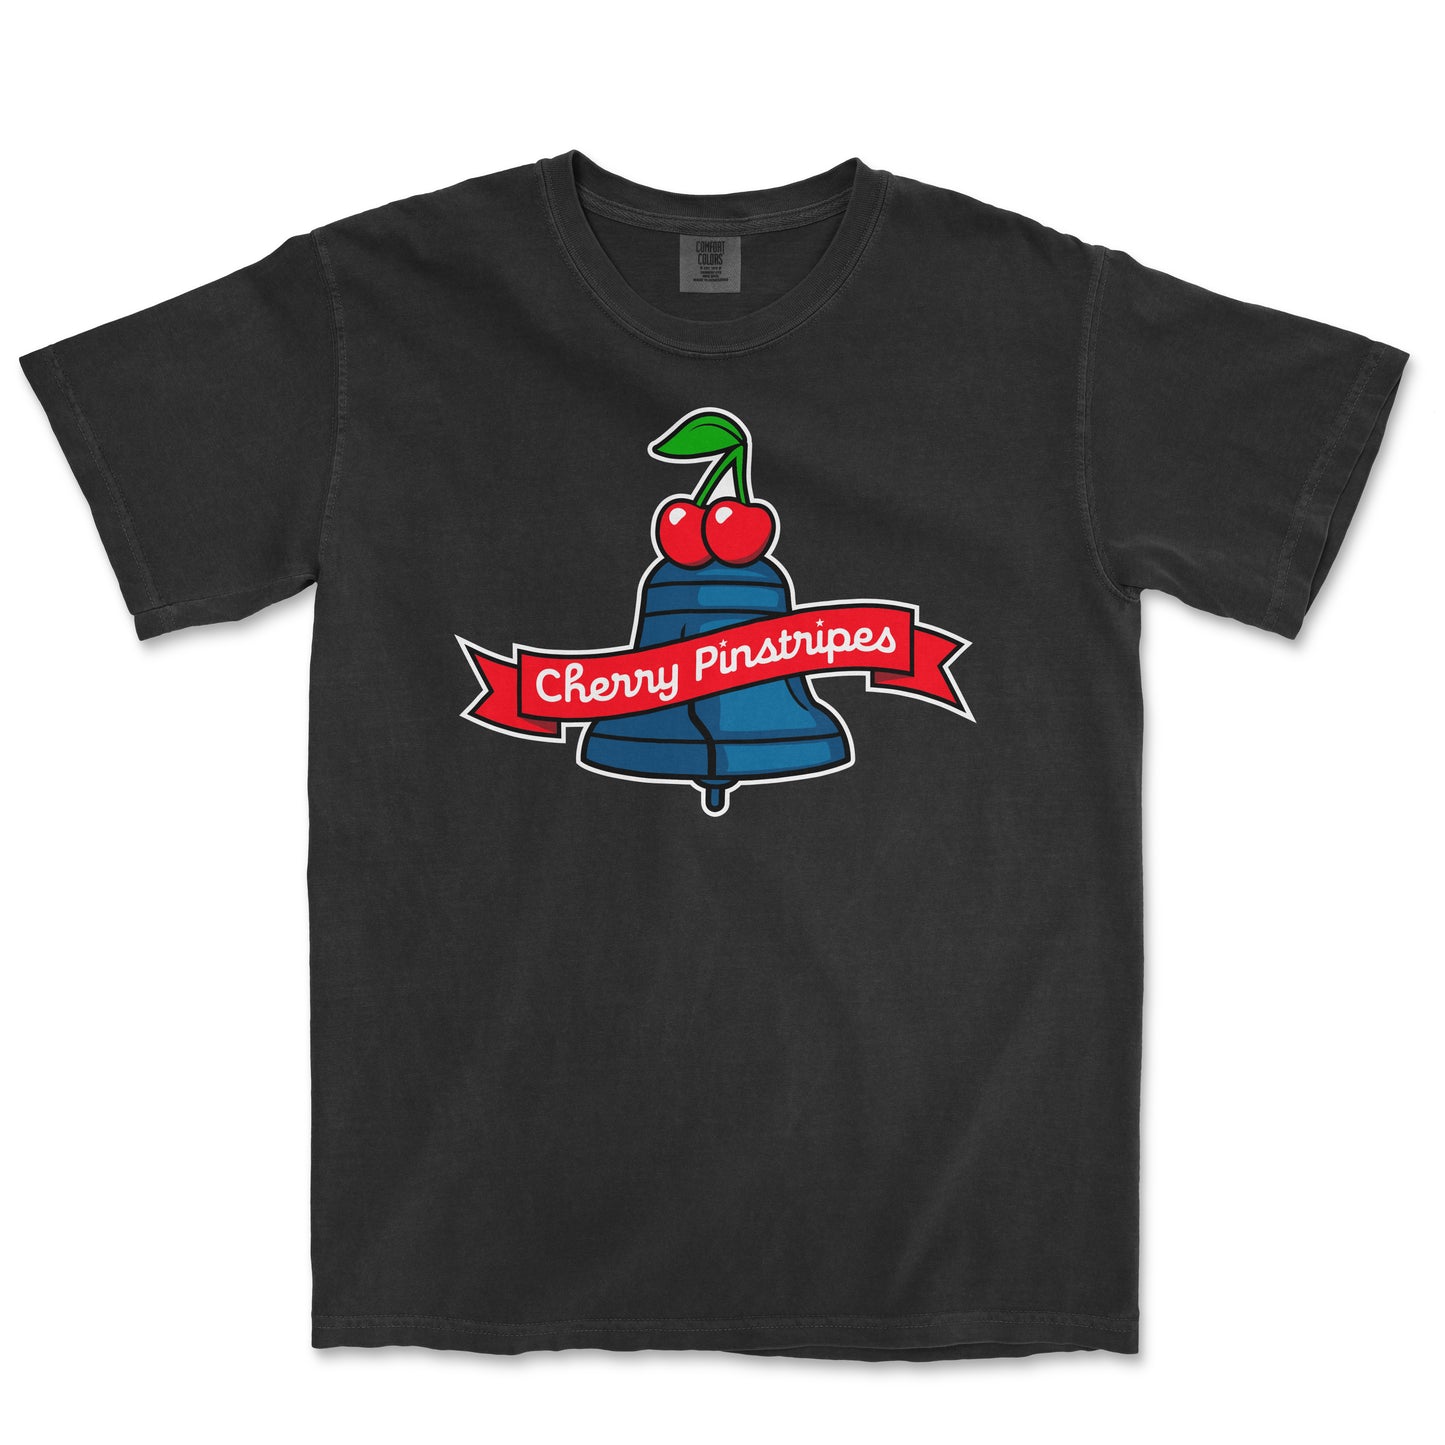 Cherry Pinstripes | T-shirt